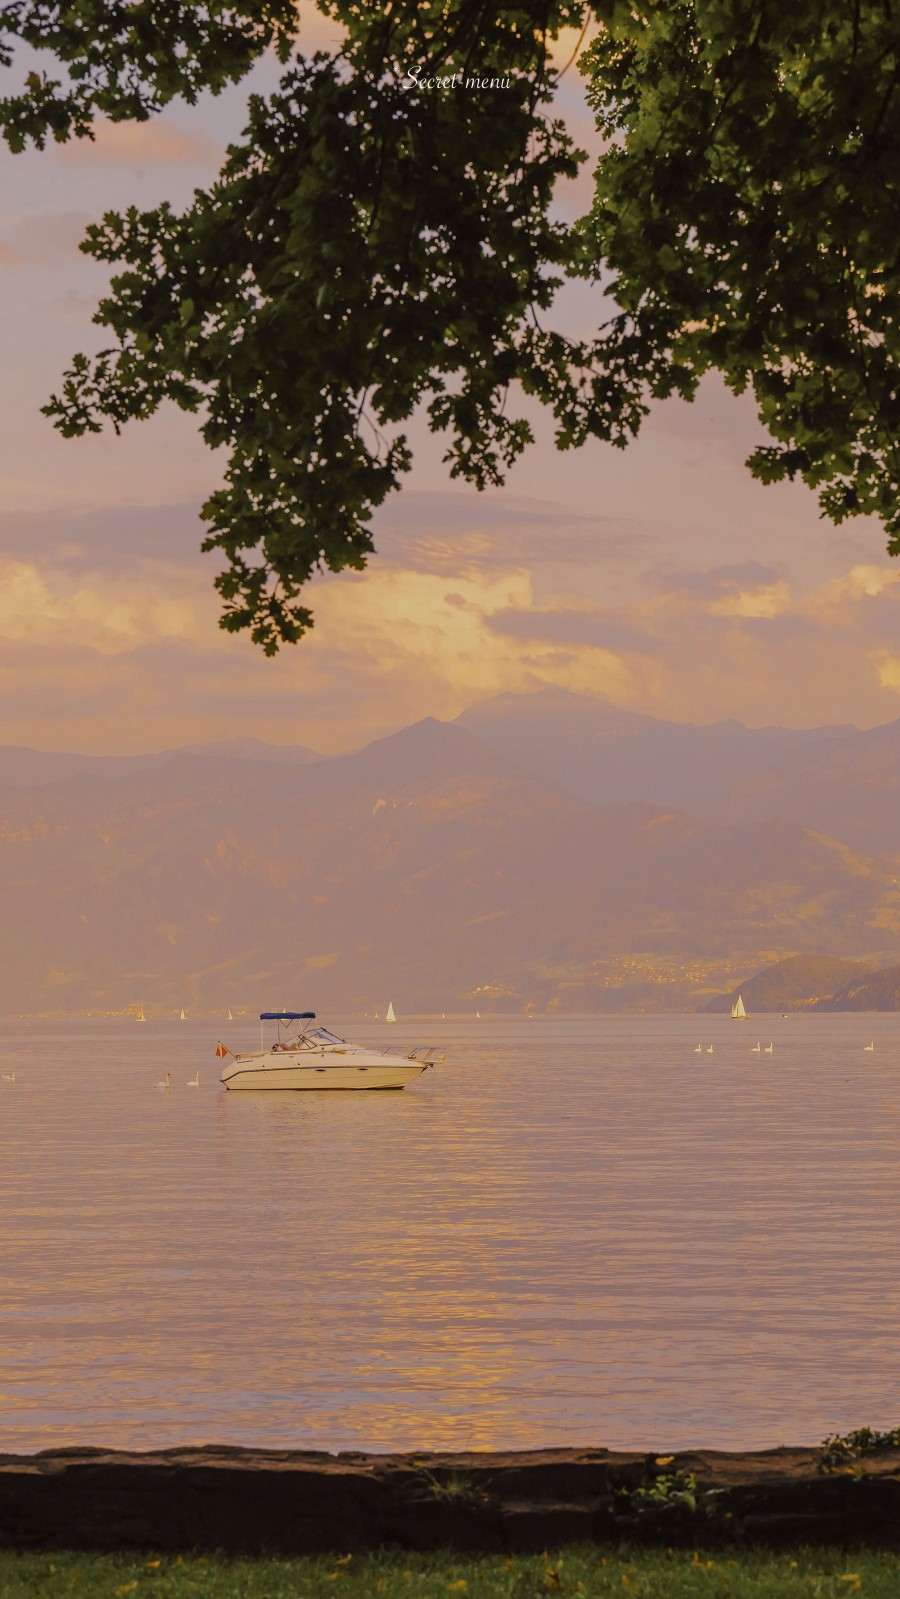 回忆里吹来瑞士的夏风
摄影：@Secret-meun